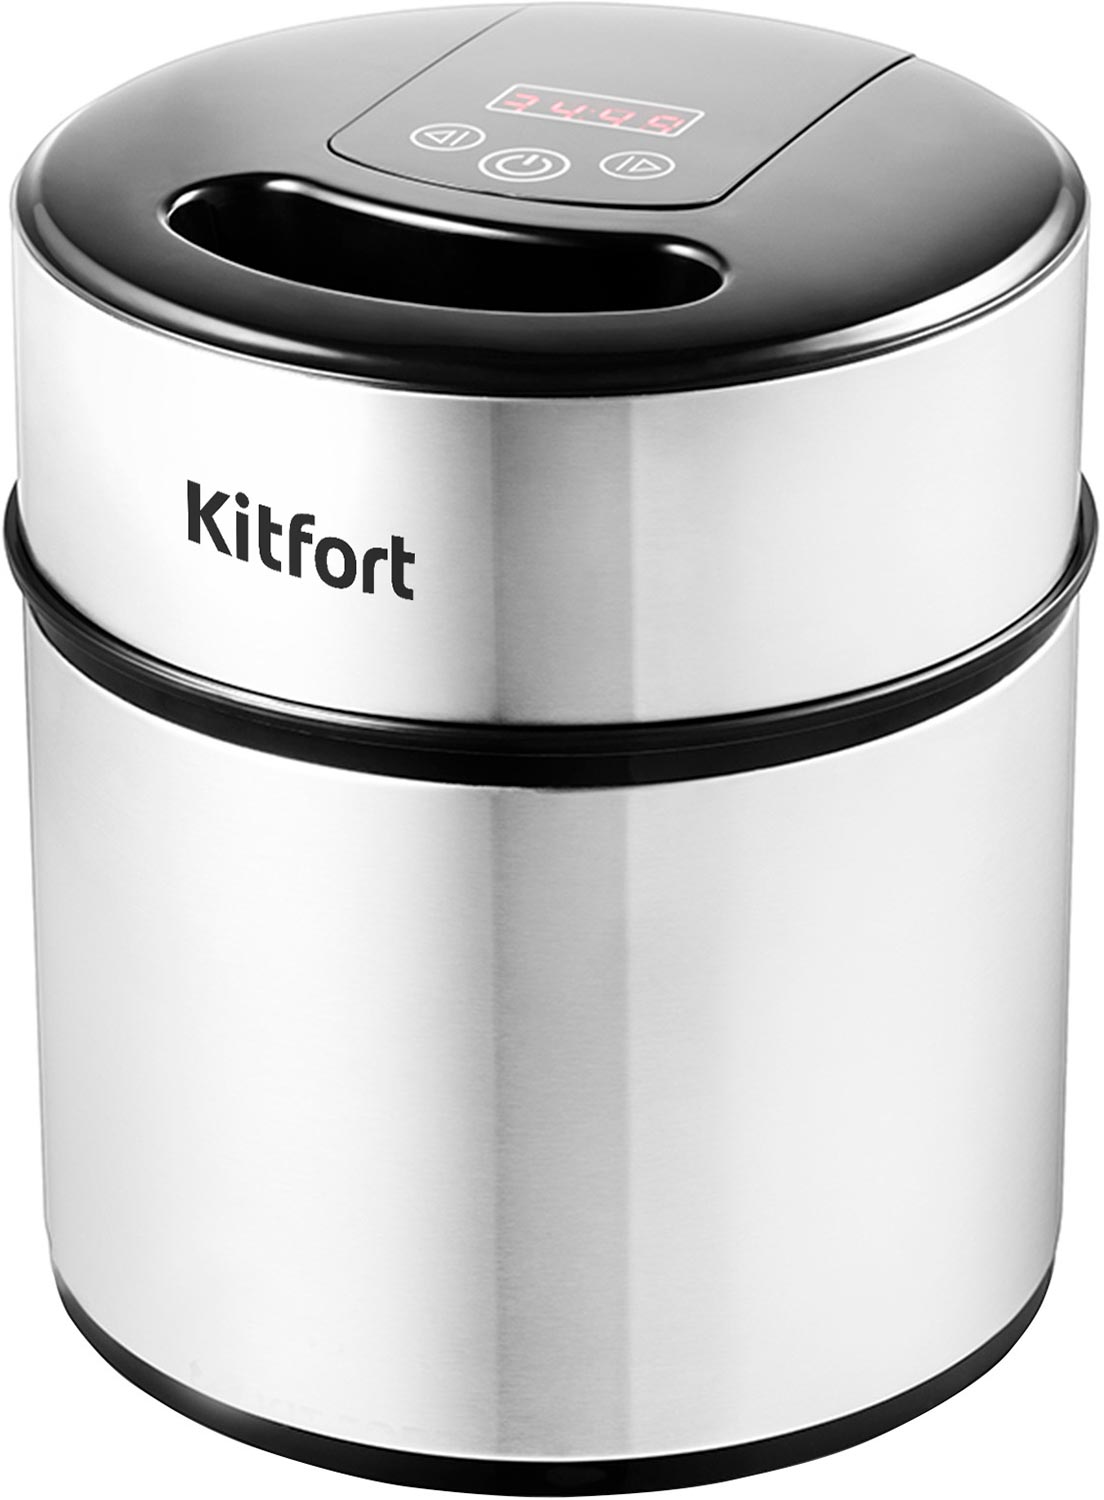 Мороженица Kitfort КТ-1804 мороженица kitfort kt 1804 полуавтомат 12 вт 2 л съёмная чаша серебристая